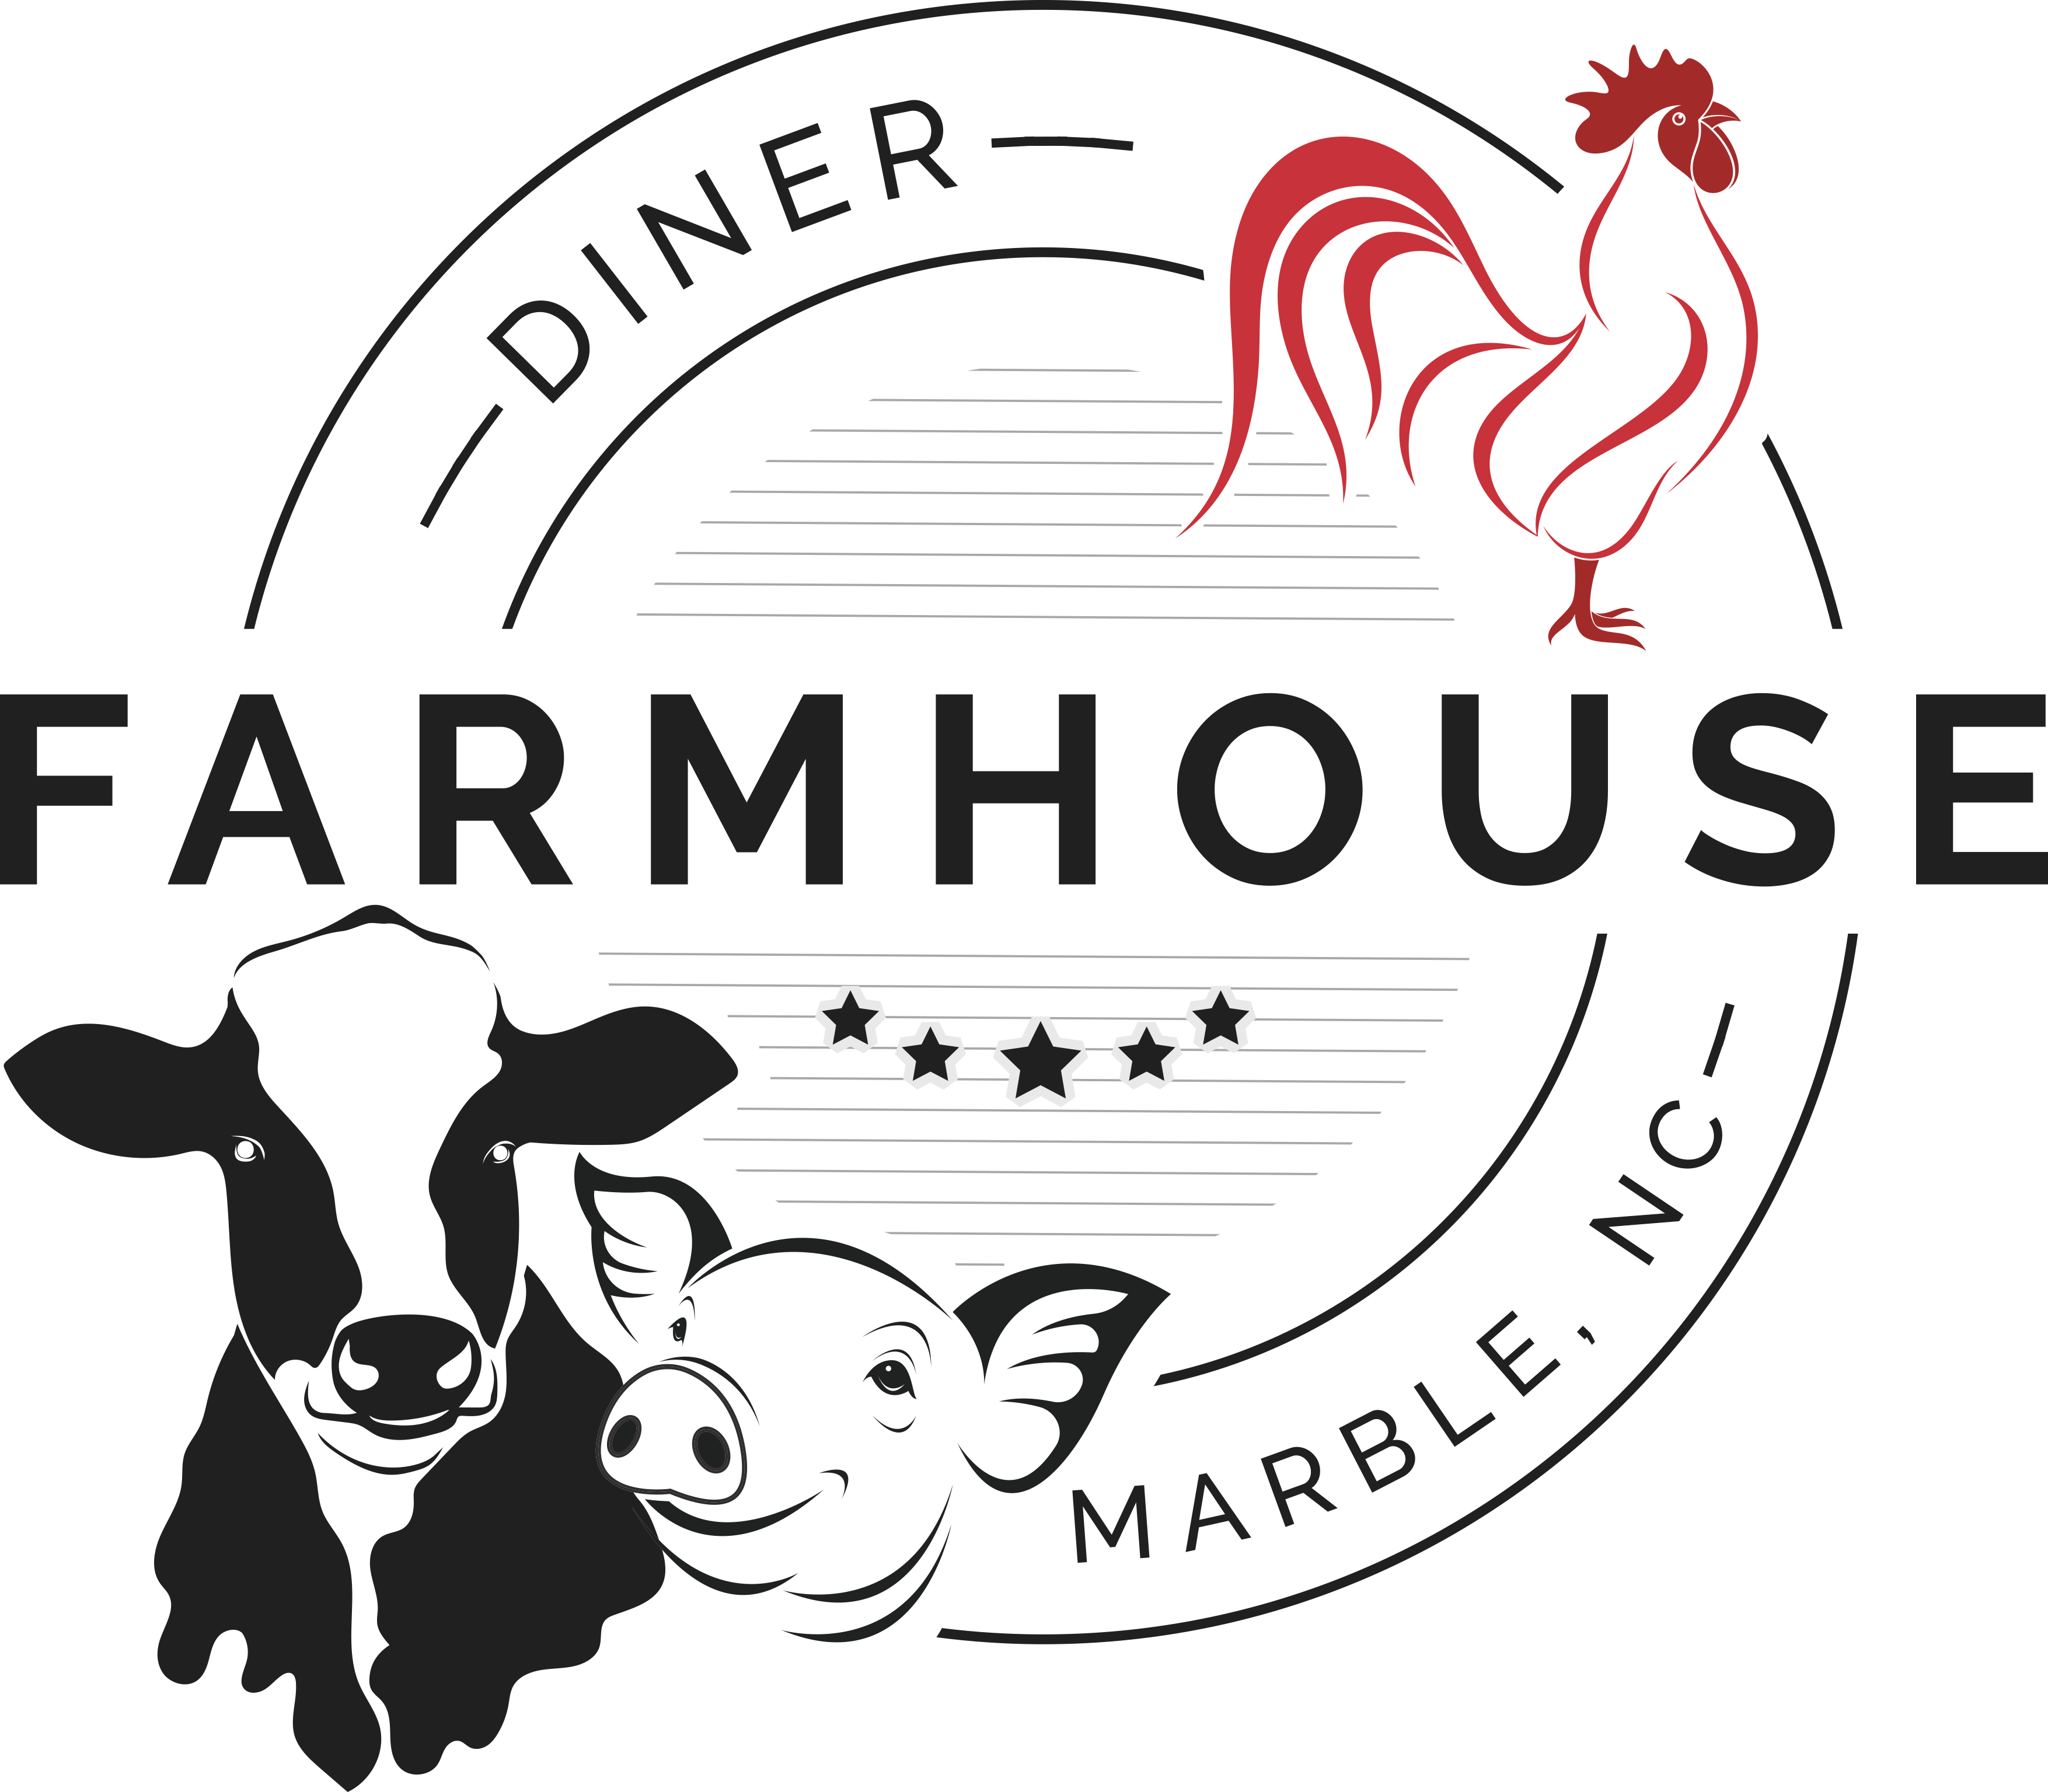 Farmhouse Diner